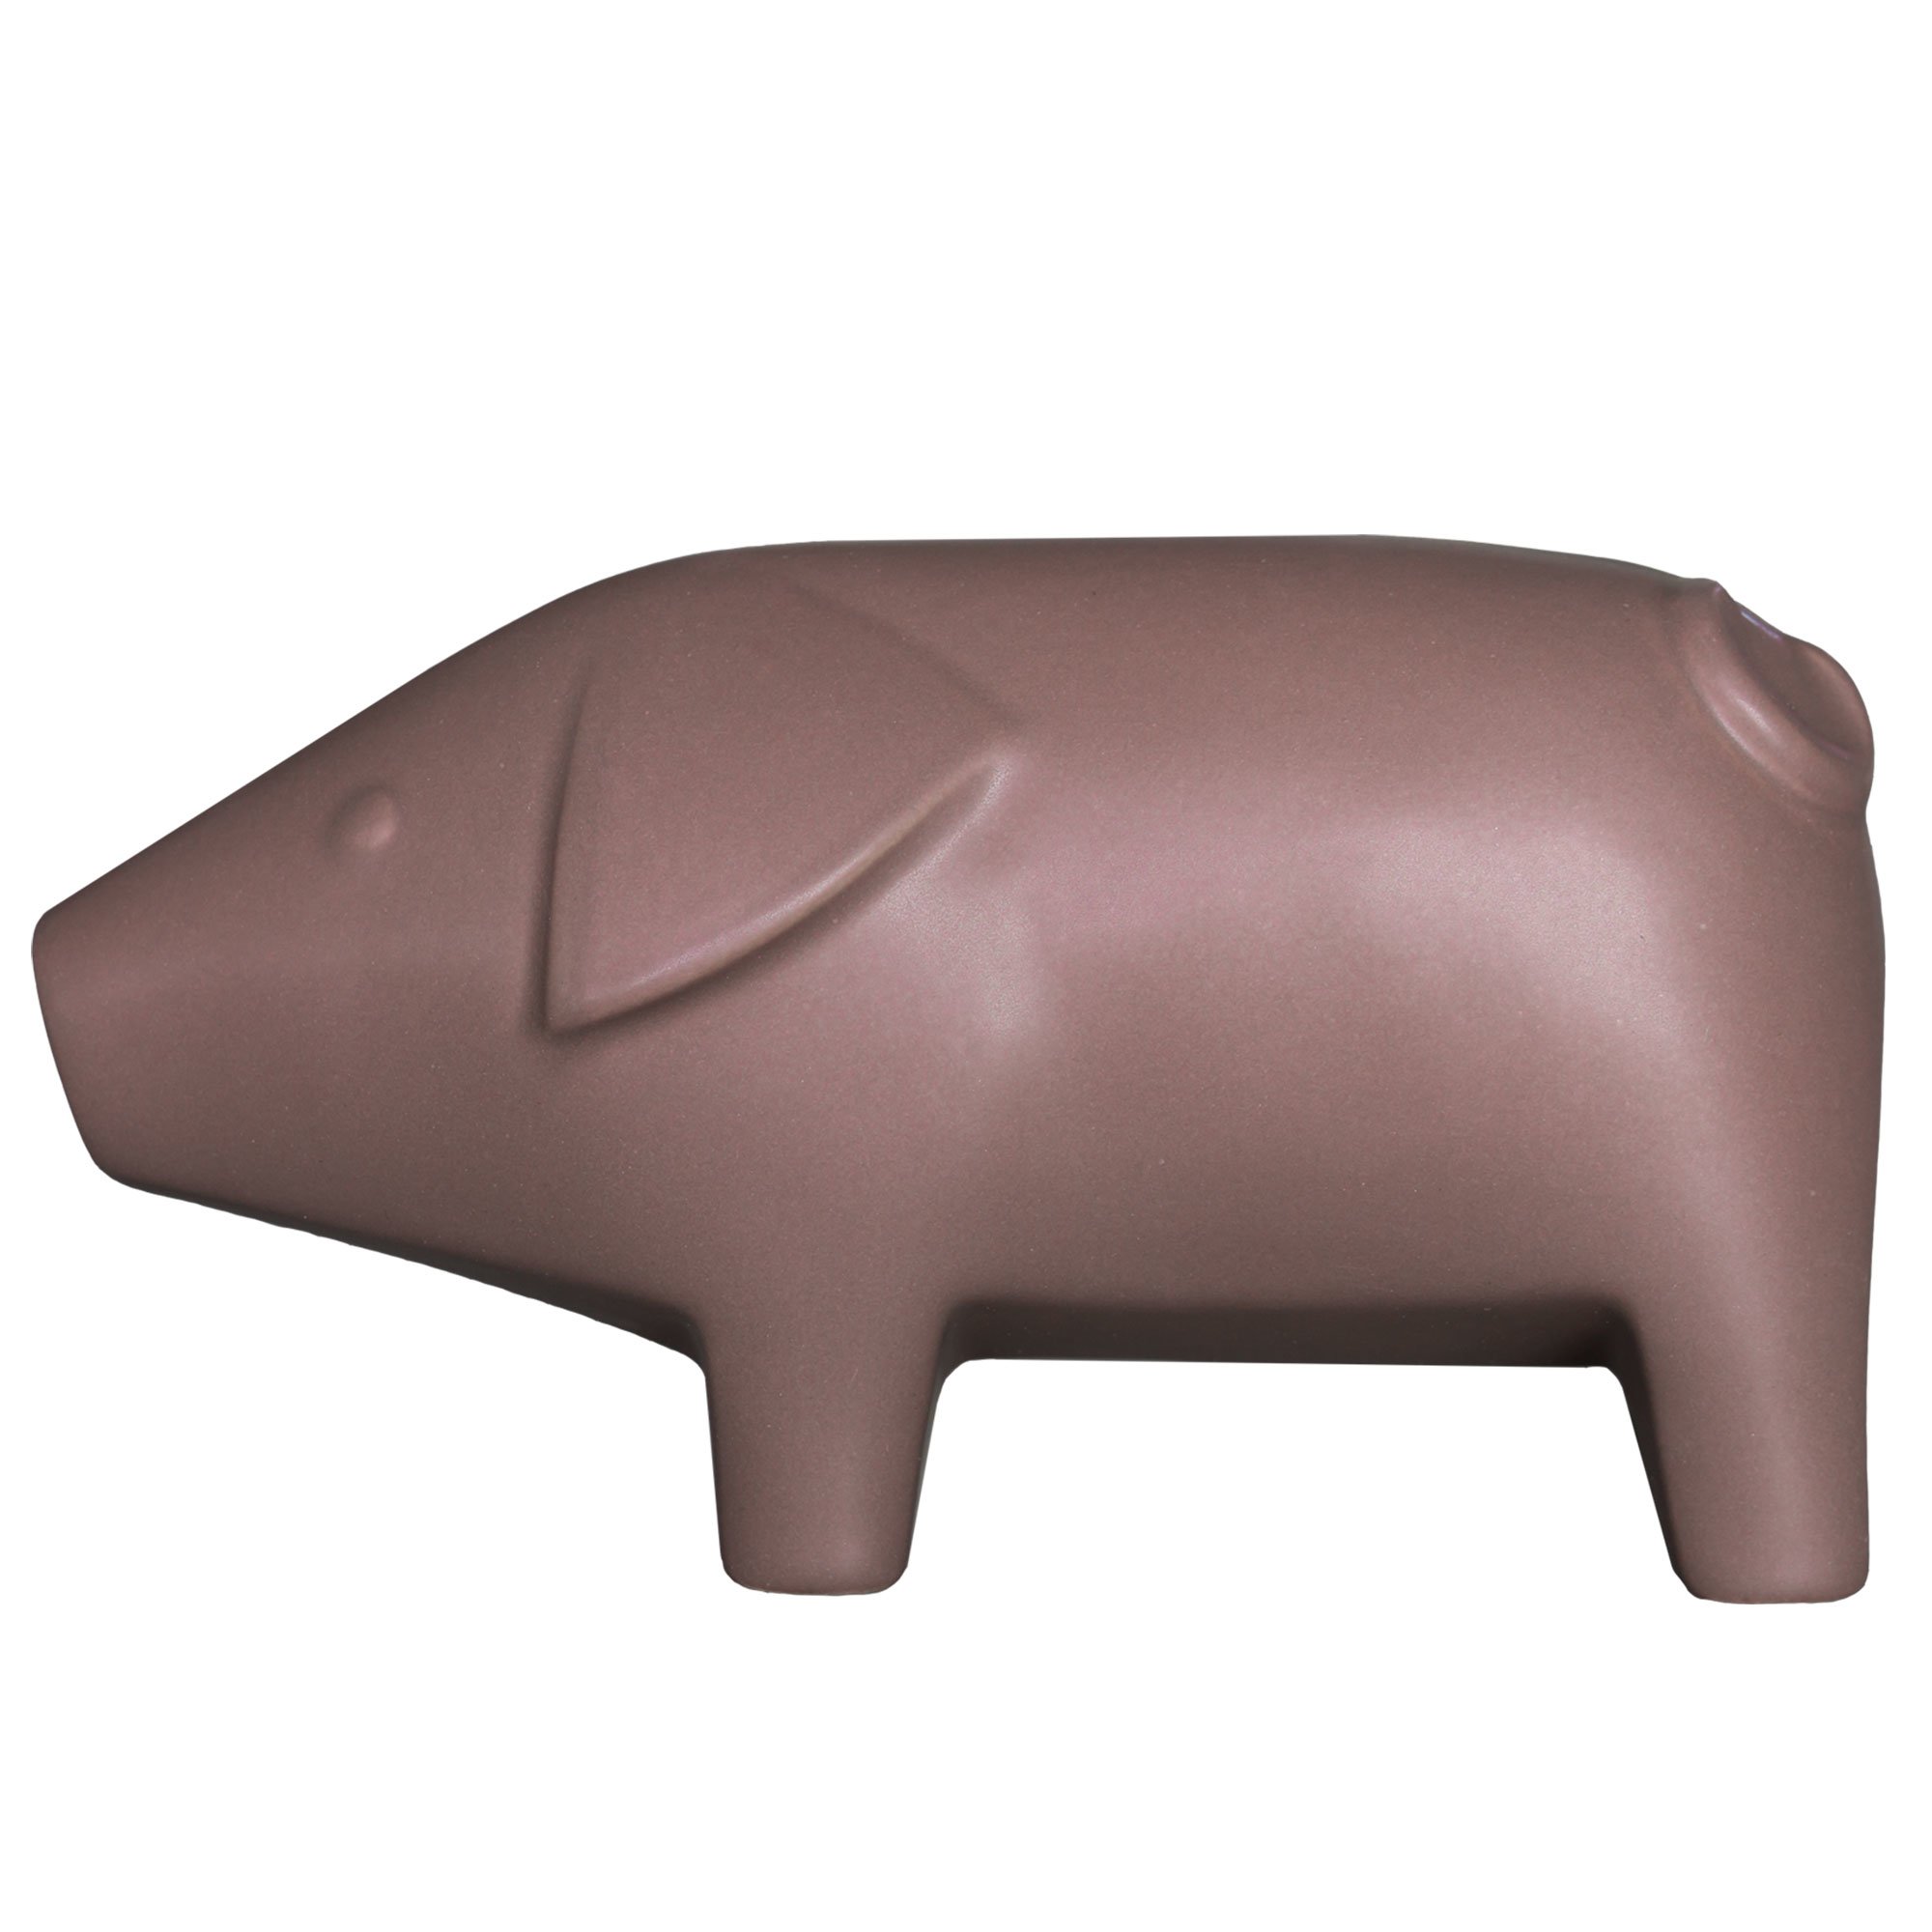 DBKD Swedish Pig Small, 16 cm, maroon Figur